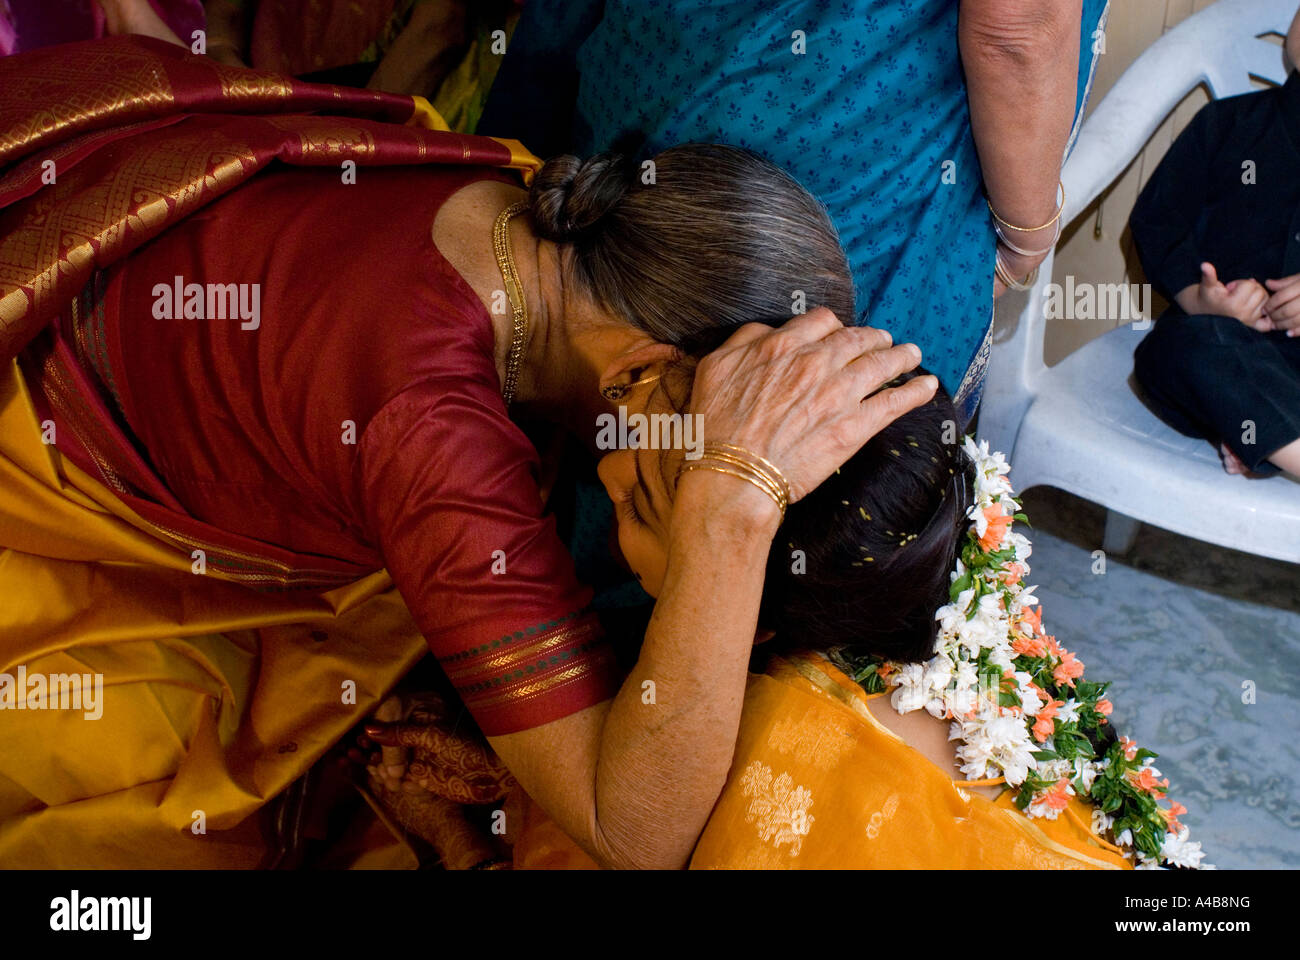 Image de mariée mariage hindou traditionnel recevoir des bénédictions de femmes de la famille à Hyderabad Inde Banque D'Images